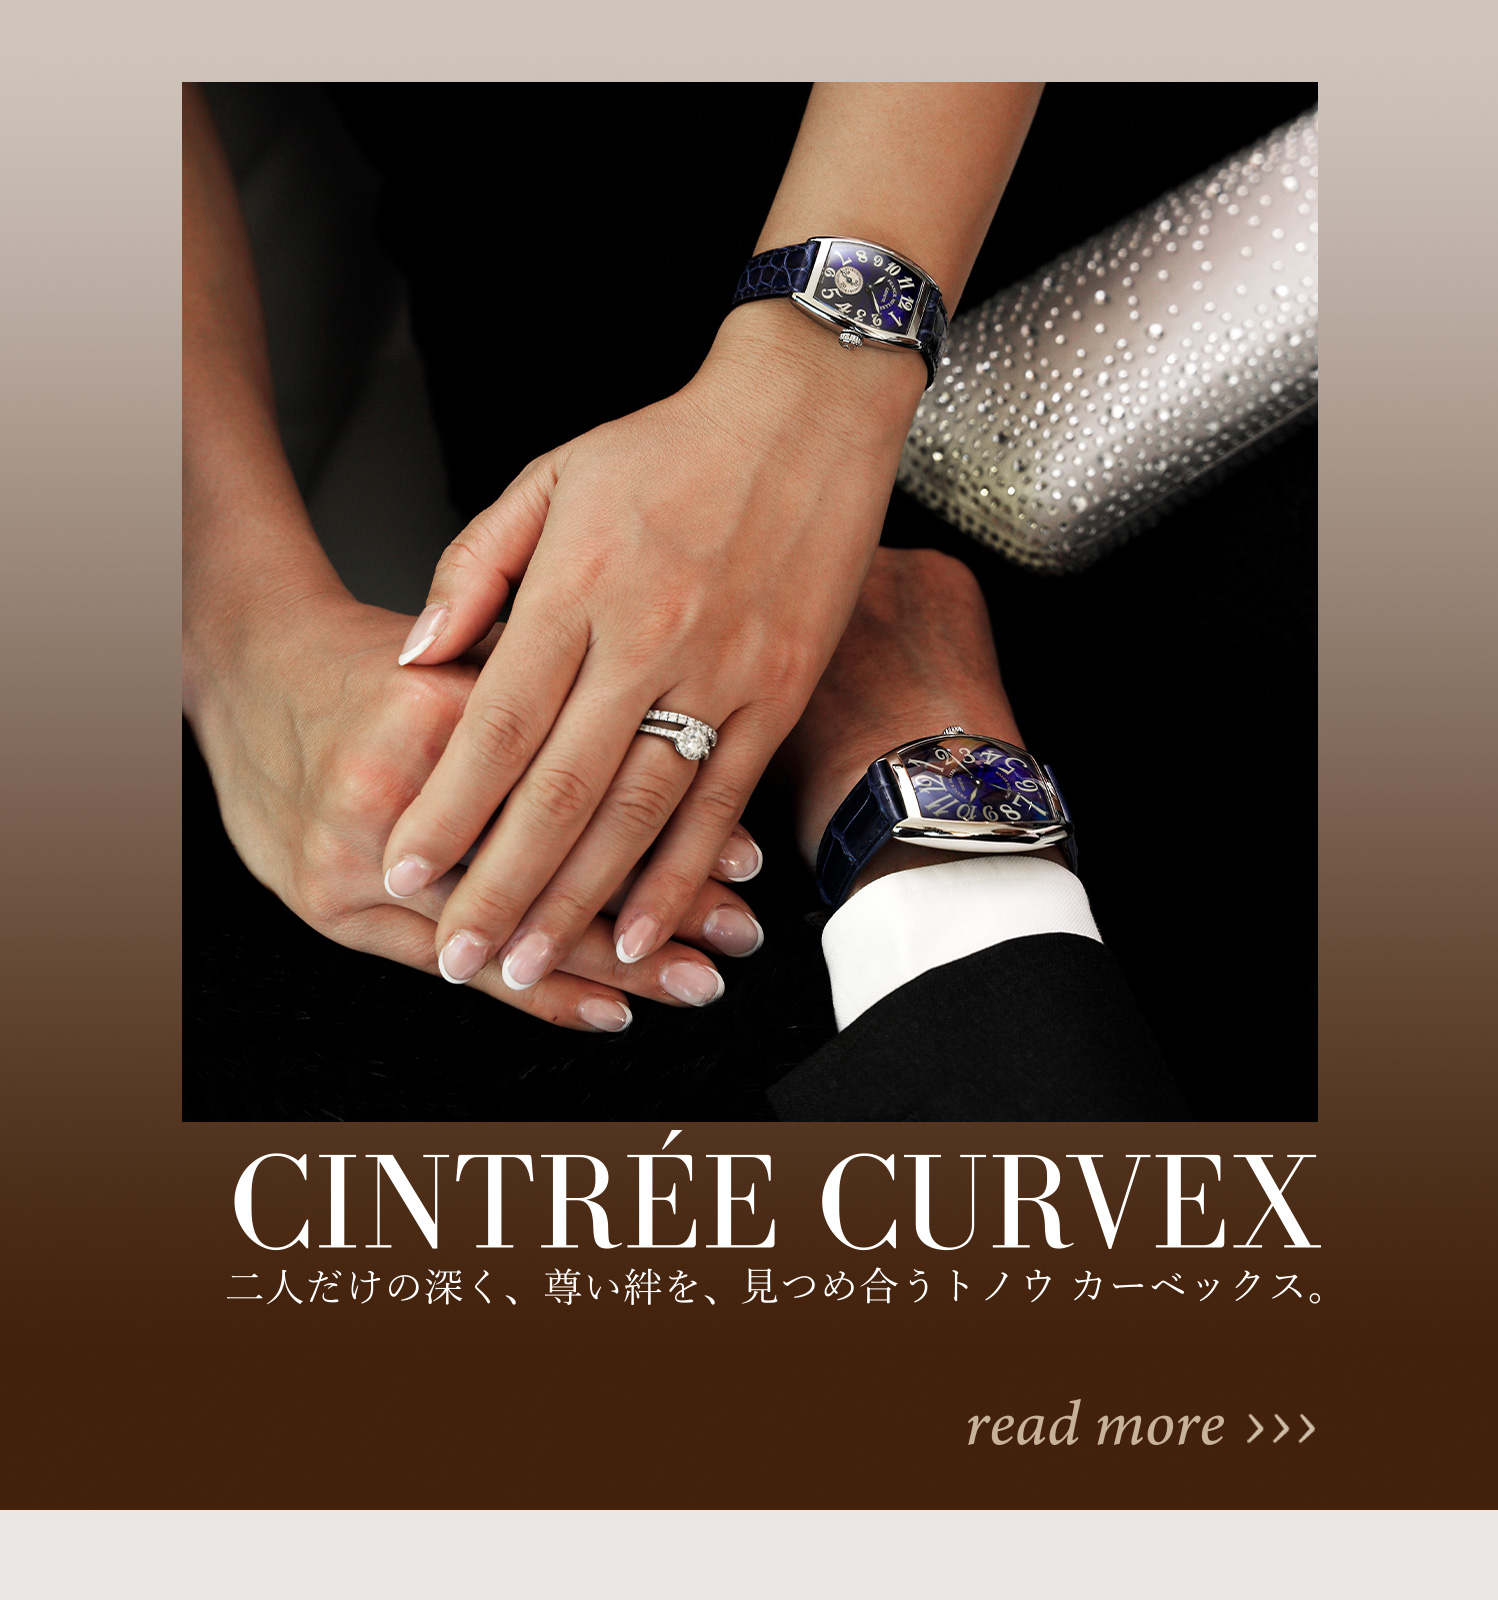 CINTREE CURVEX：二人だけの深く、尊い絆を、見つめ合うトノウ カーベックス。